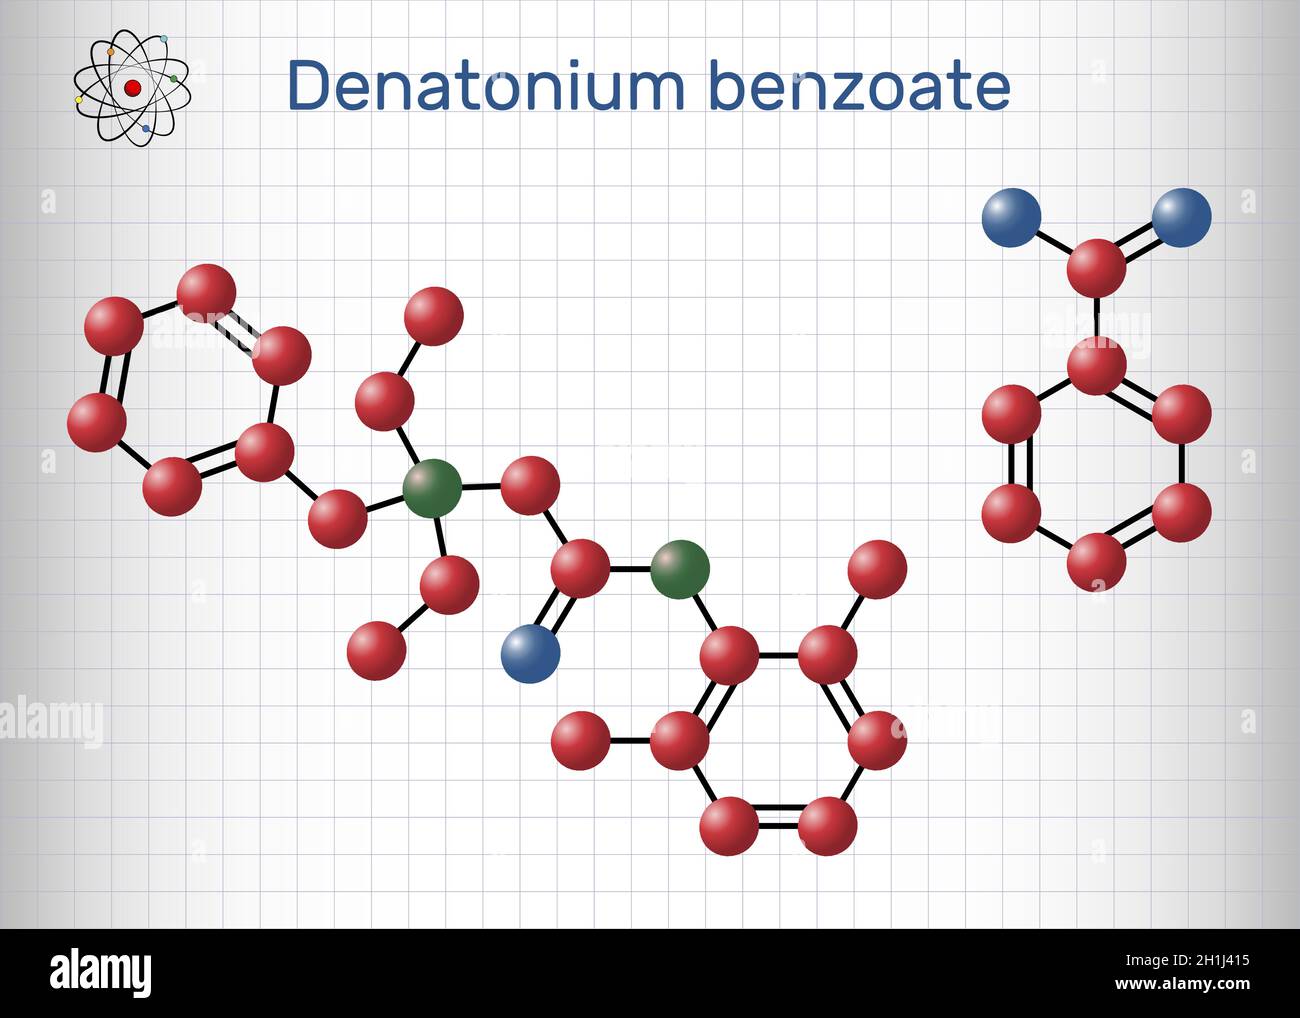 Denatonium-Benzoat-Molekül. Es hat den bittersten Geschmack aller Verbindungen, die der Wissenschaft bekannt sind. Strukturelle chemische Formel und Molekülmodell. Blatt von Stock Vektor